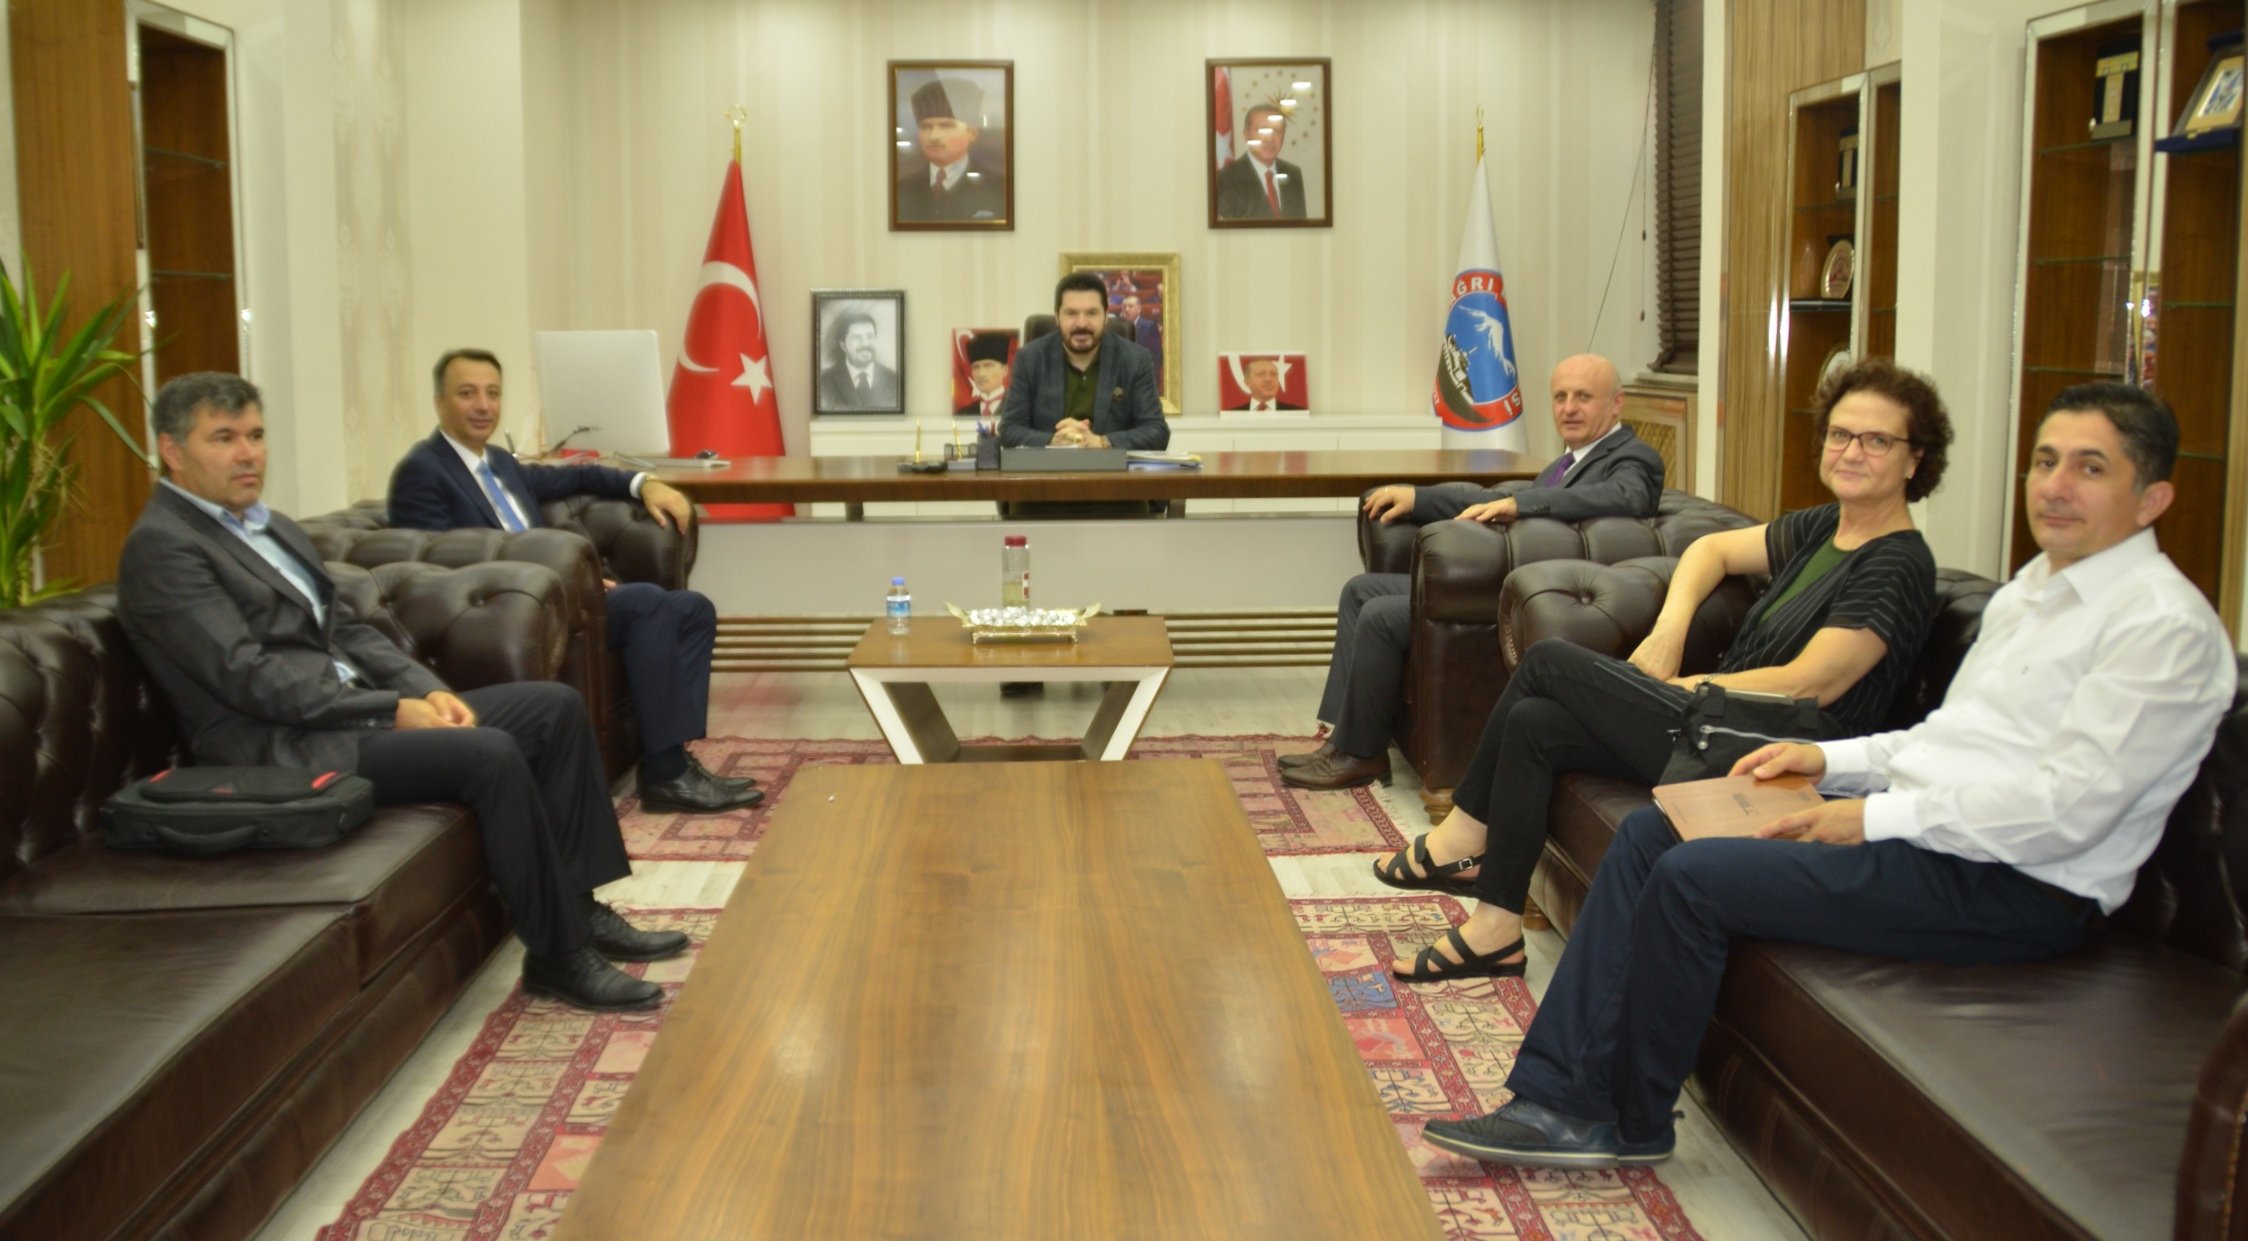 Başkan Sayan’a, Türkiye Belediyeler Birliği (TBB) Genel Sekreter Yardımcısı Kazan’dan Ziyaret